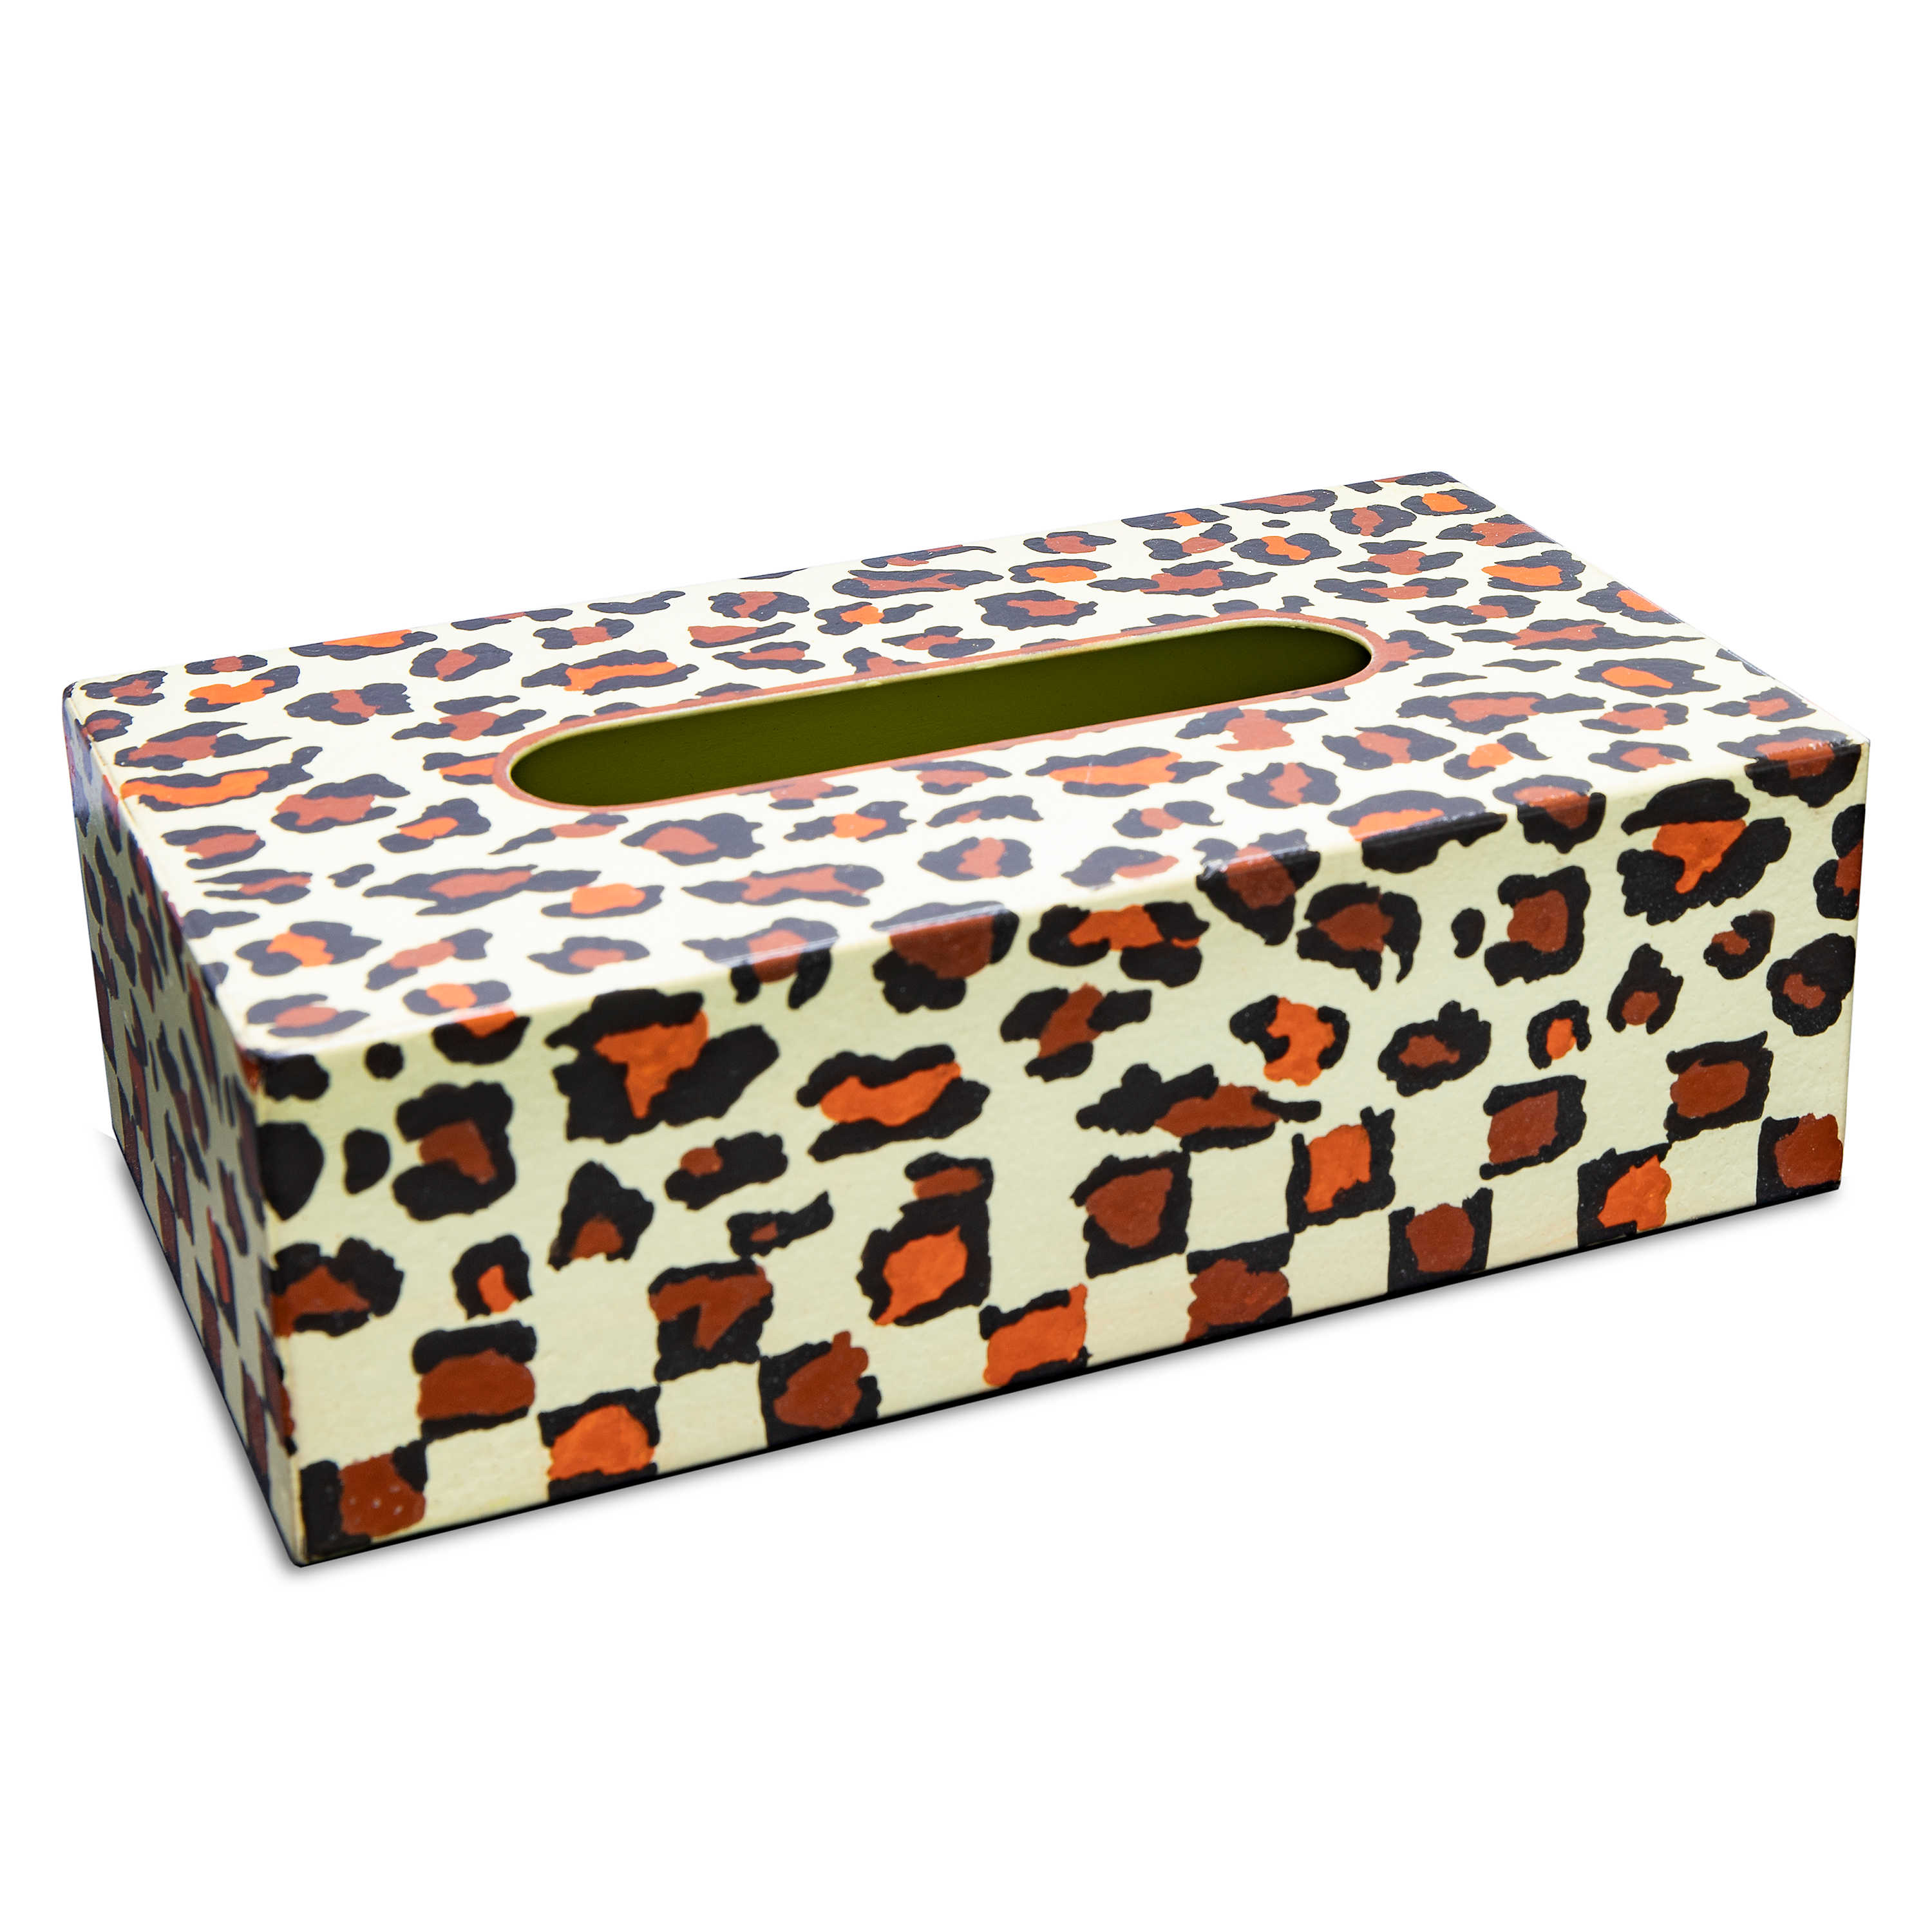 Serengeti Standard Tissue Box Holder mackenzie-childs Panama 1